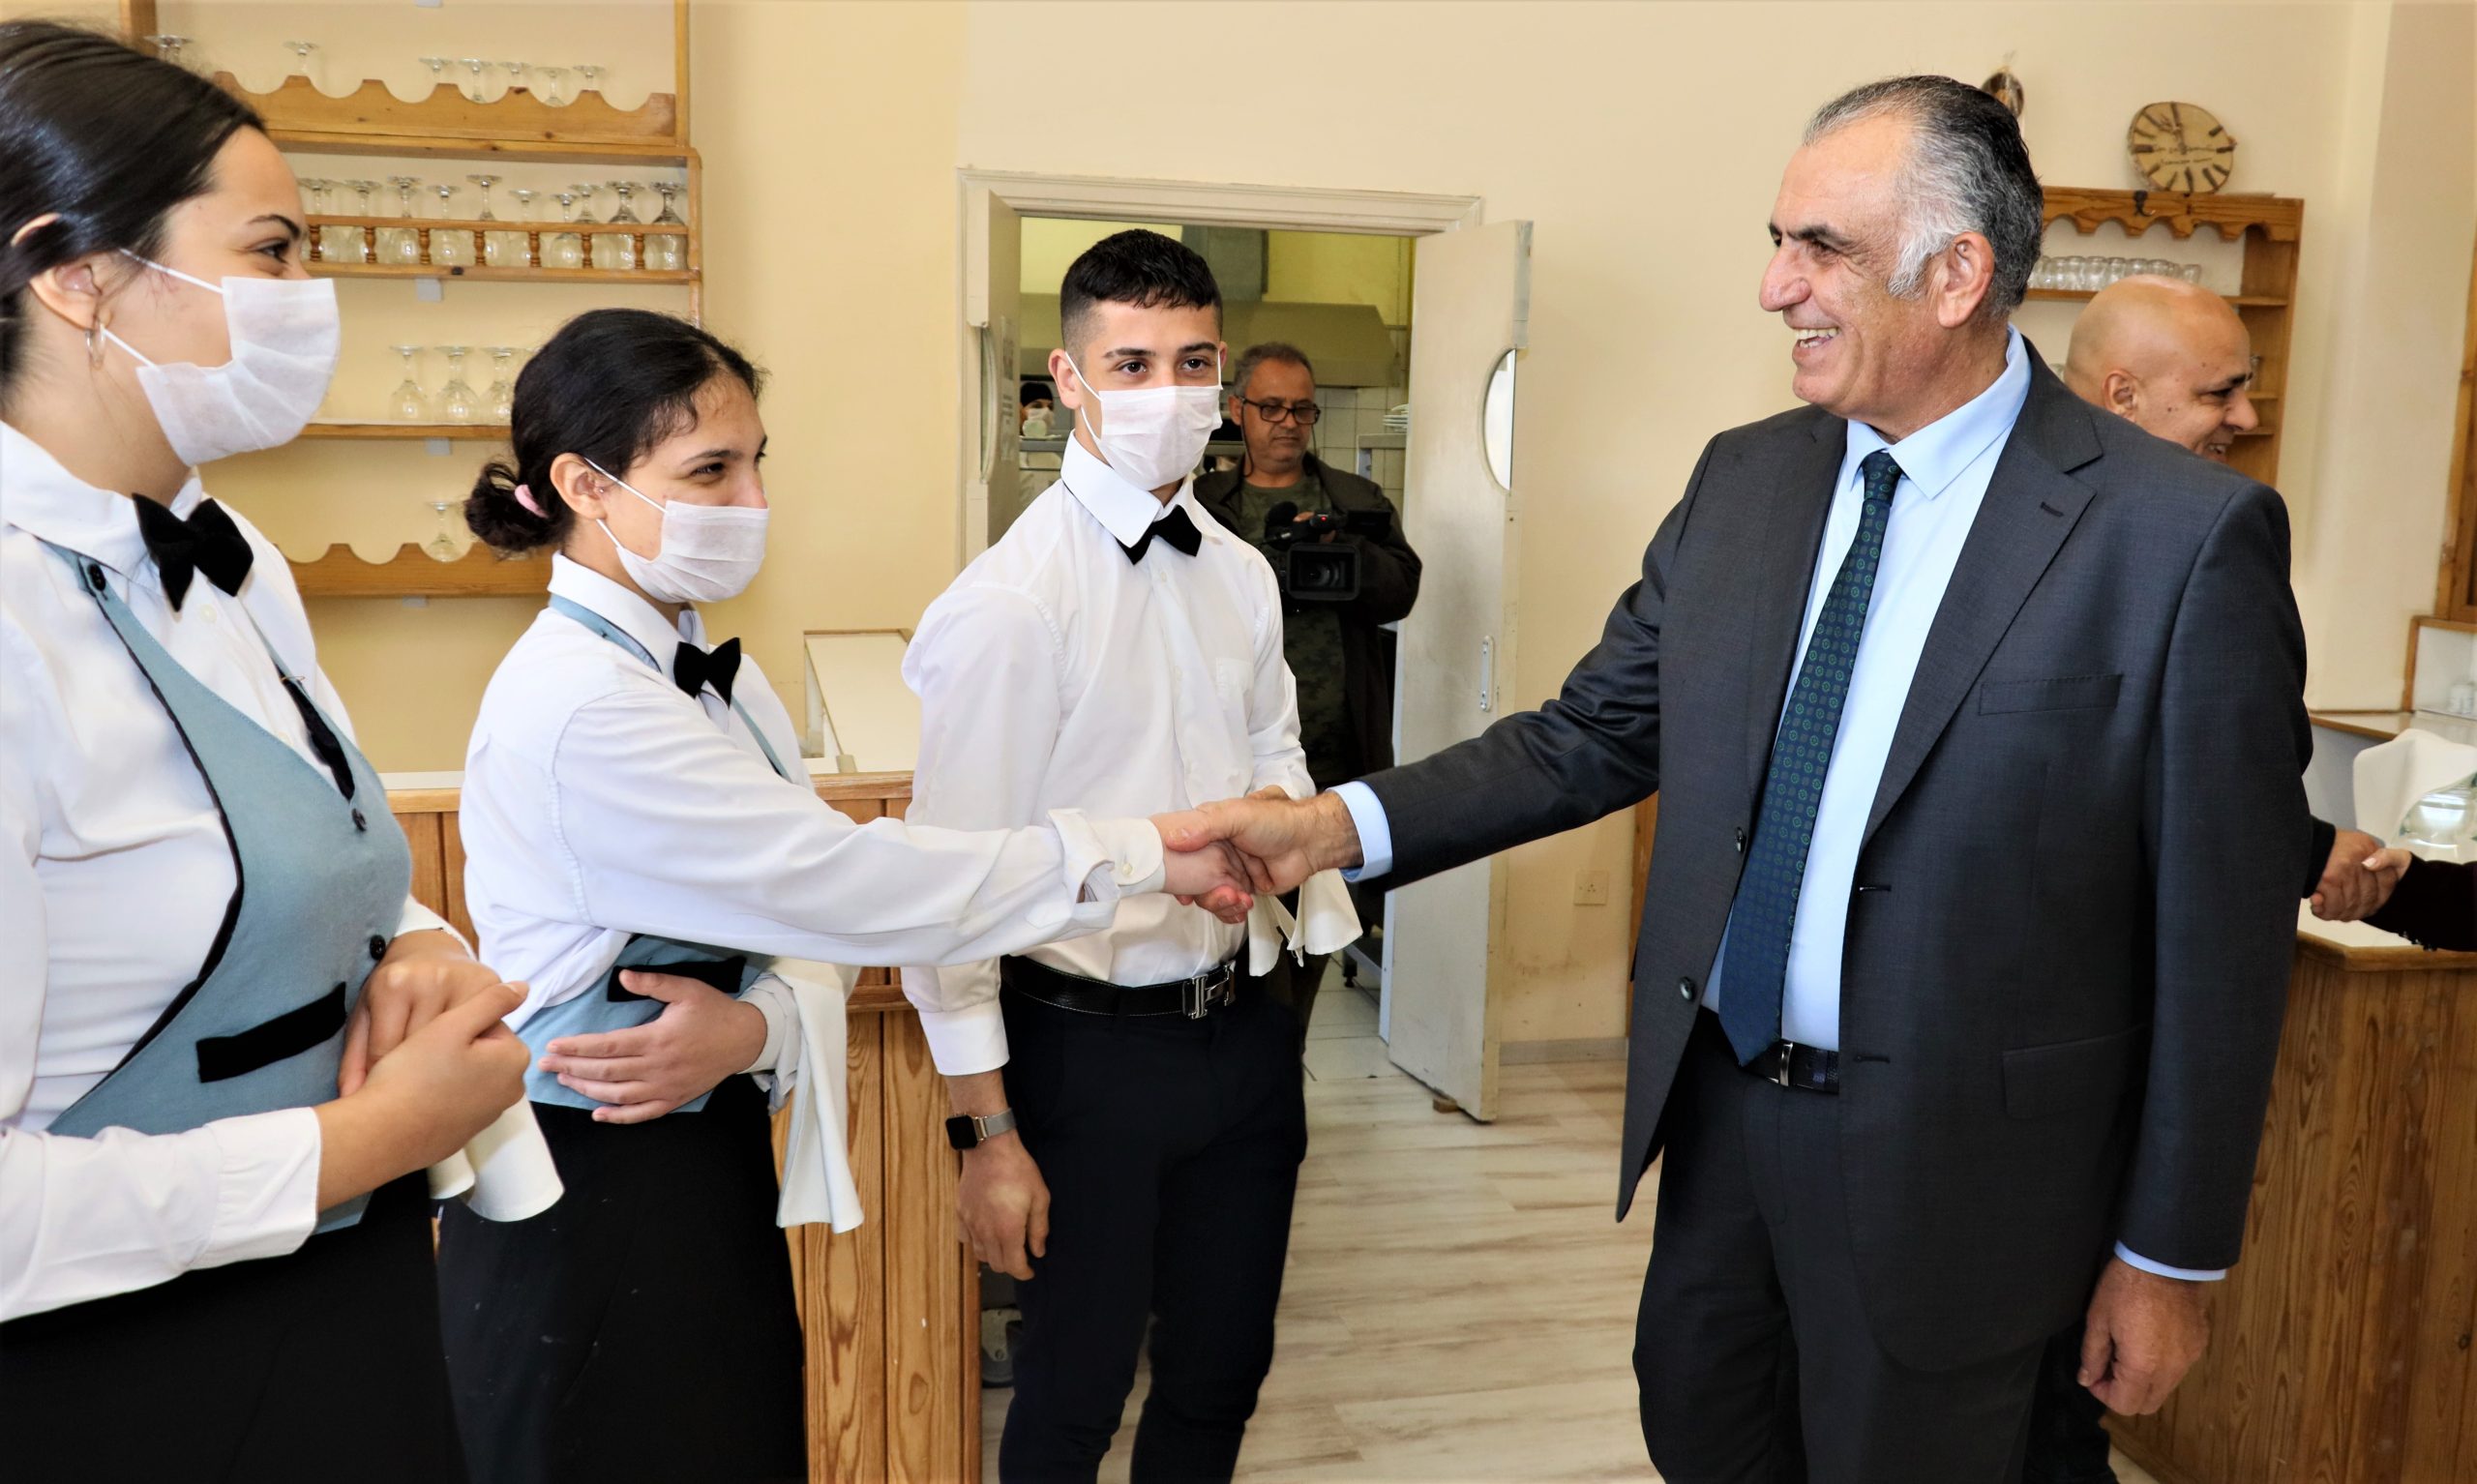 Bakan Çavuşoğlu, Haydarpaşa Ticaret Lisesi’ni ziyaret etti